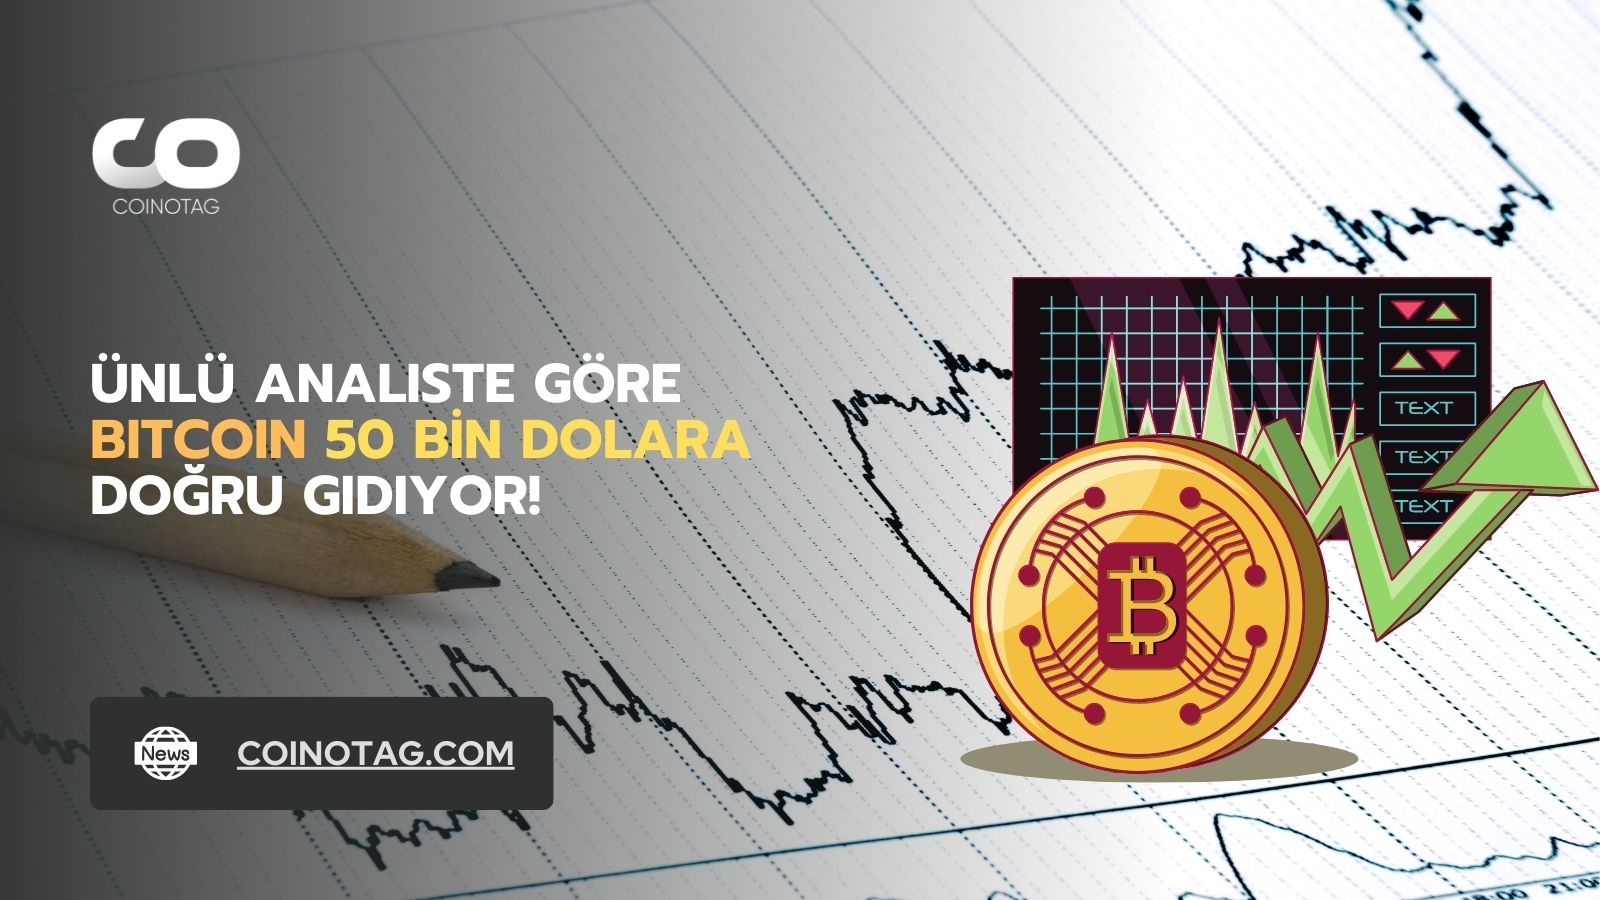 Unlu-analiste-gore-bitcoin-50k-dolar